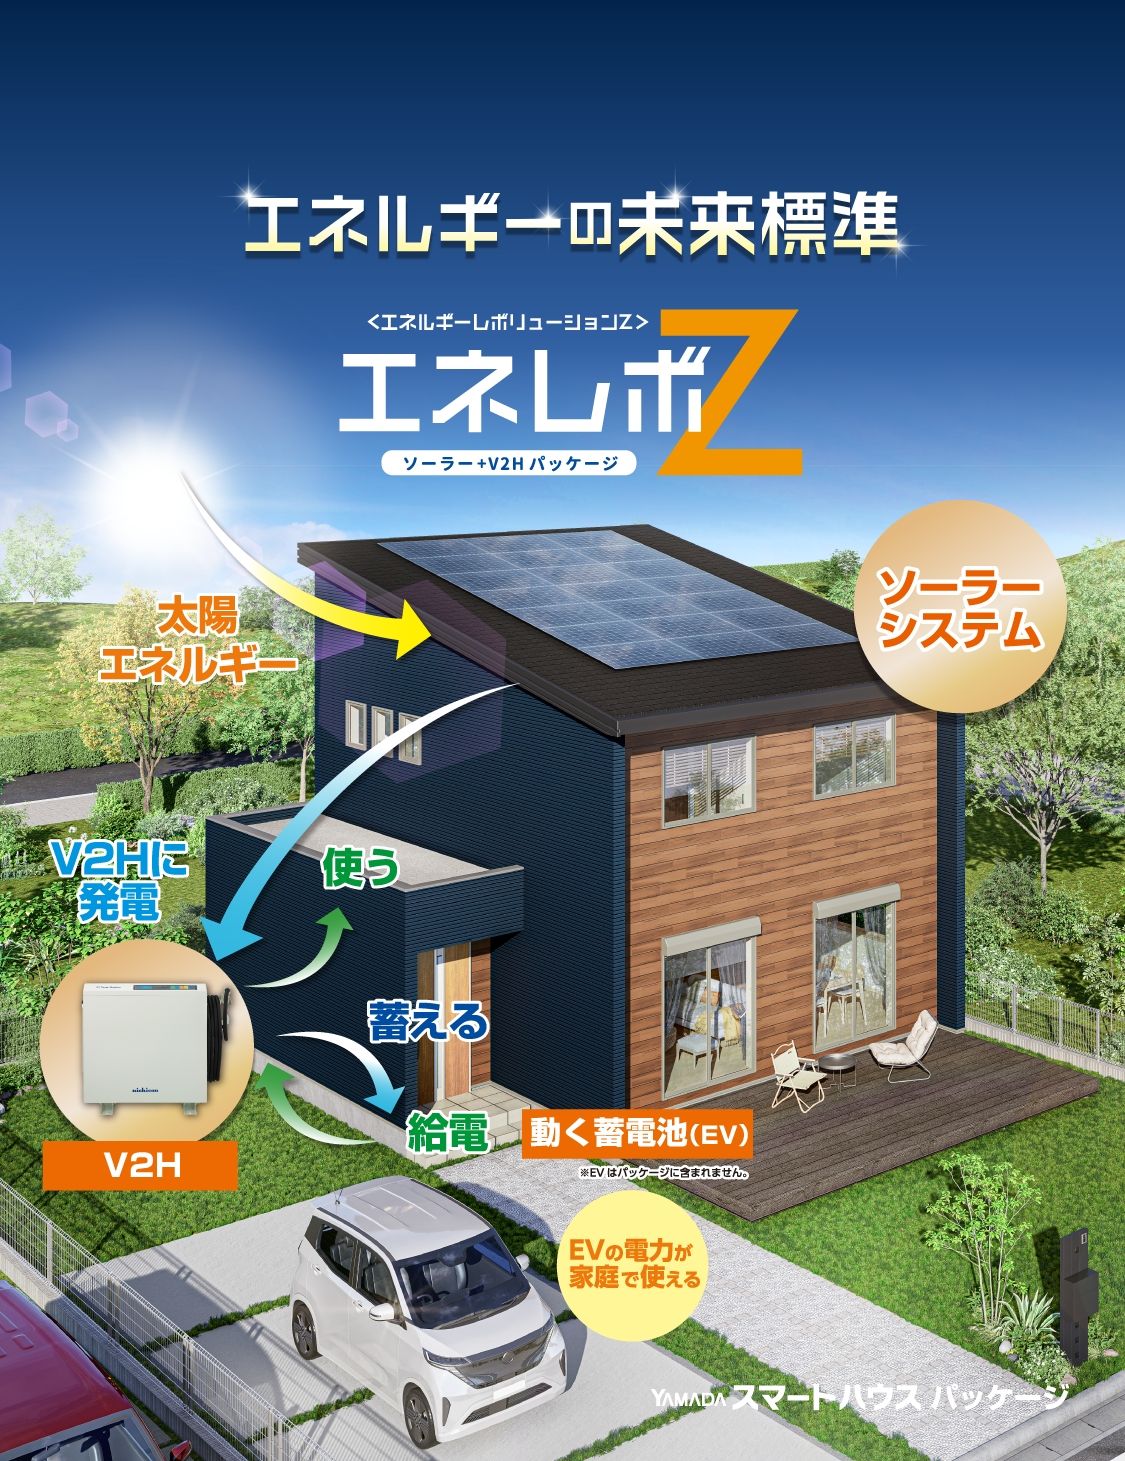 太陽光発電を自家消費に最適な容量とし、将来のEVとの連携を可能としたパッケージ。エネルギーの未来標準「エネレボZ」